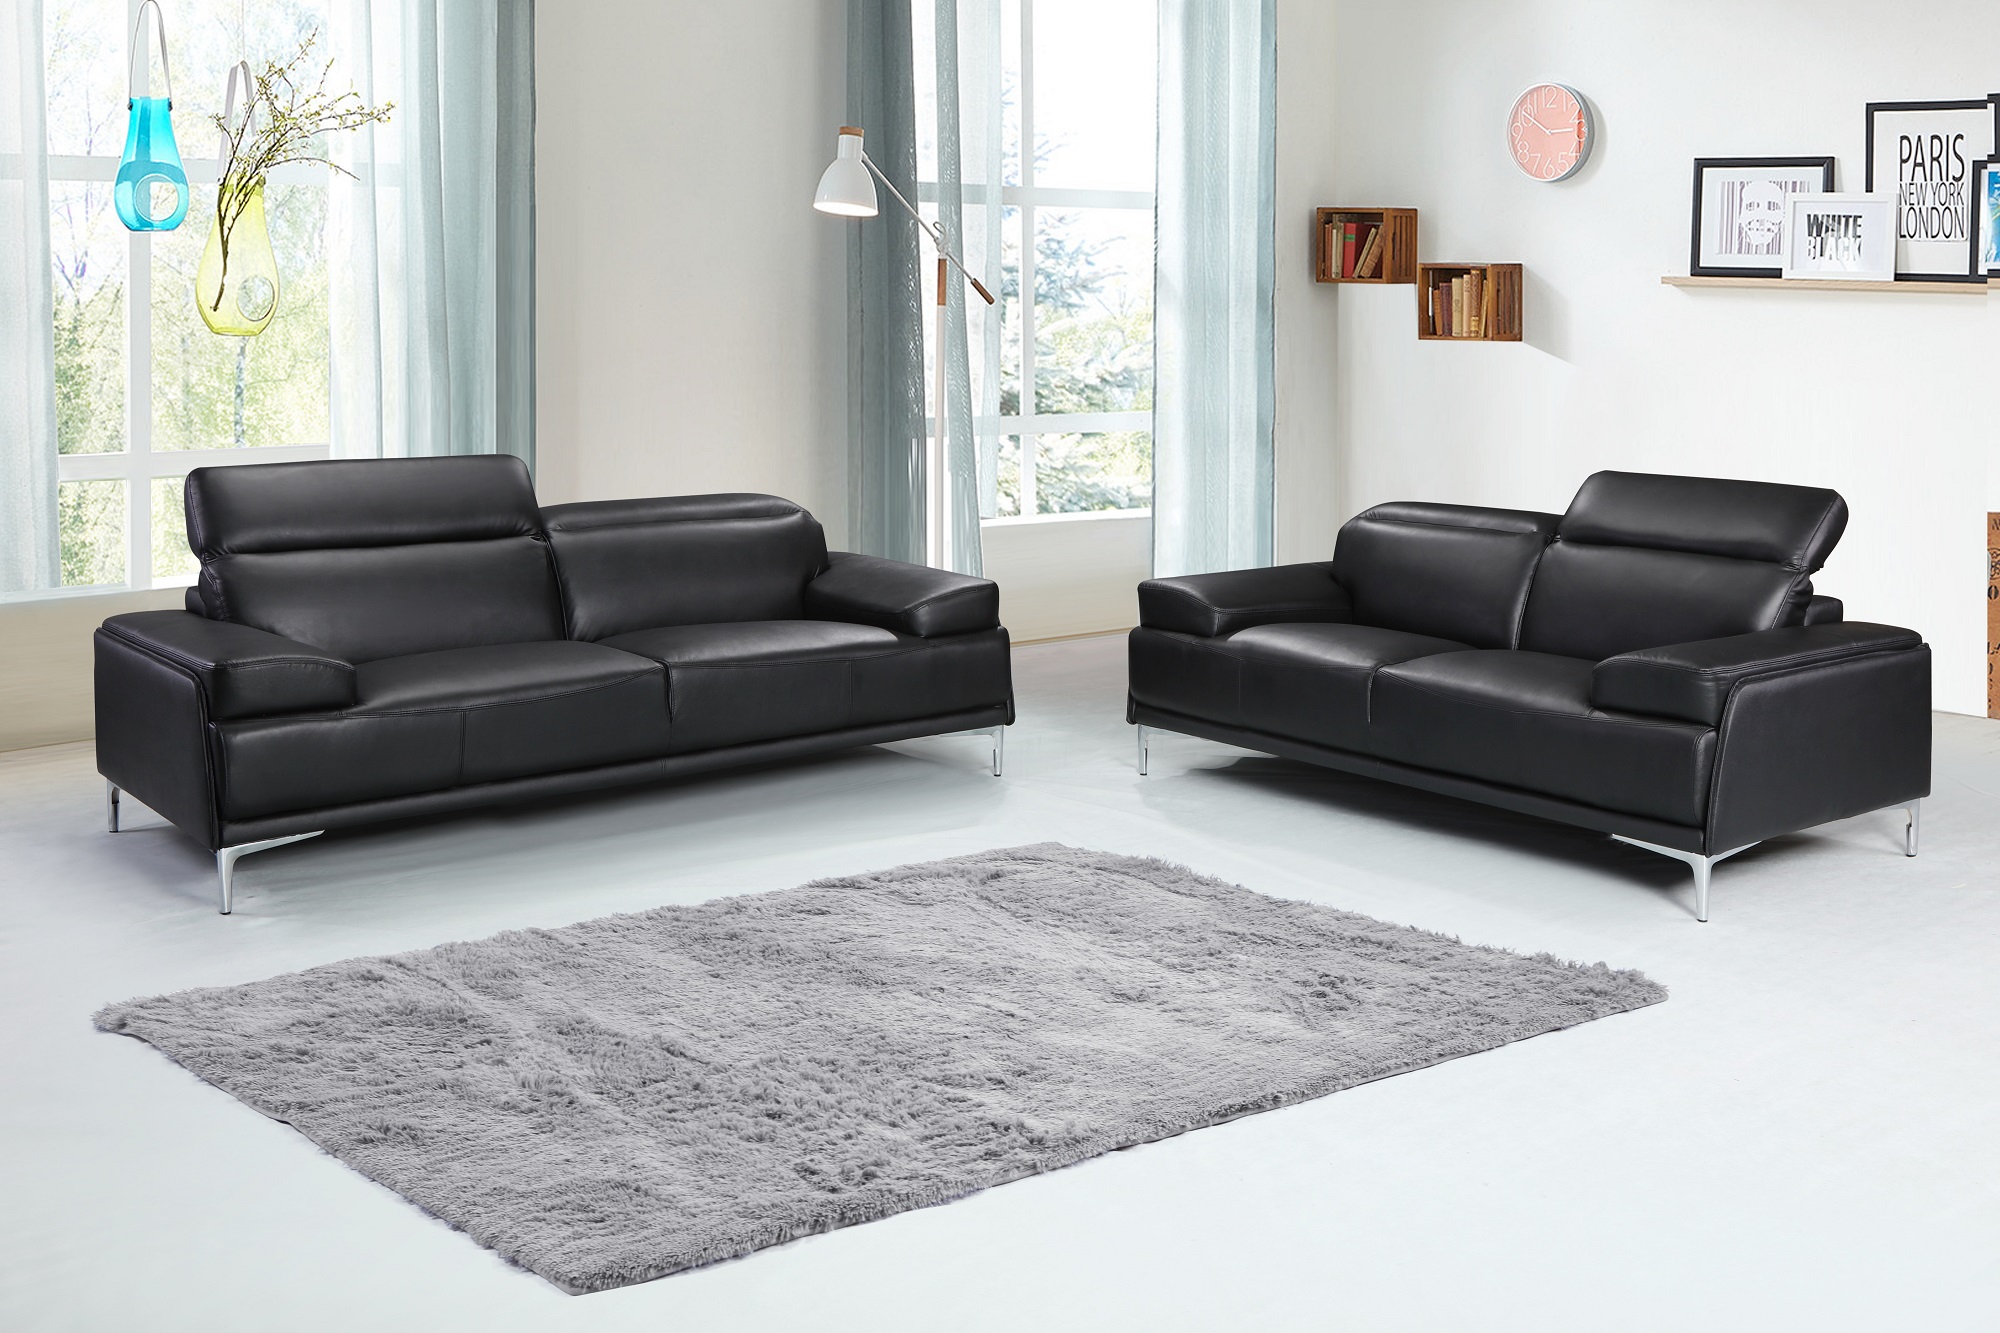 black leather sofa room ideas